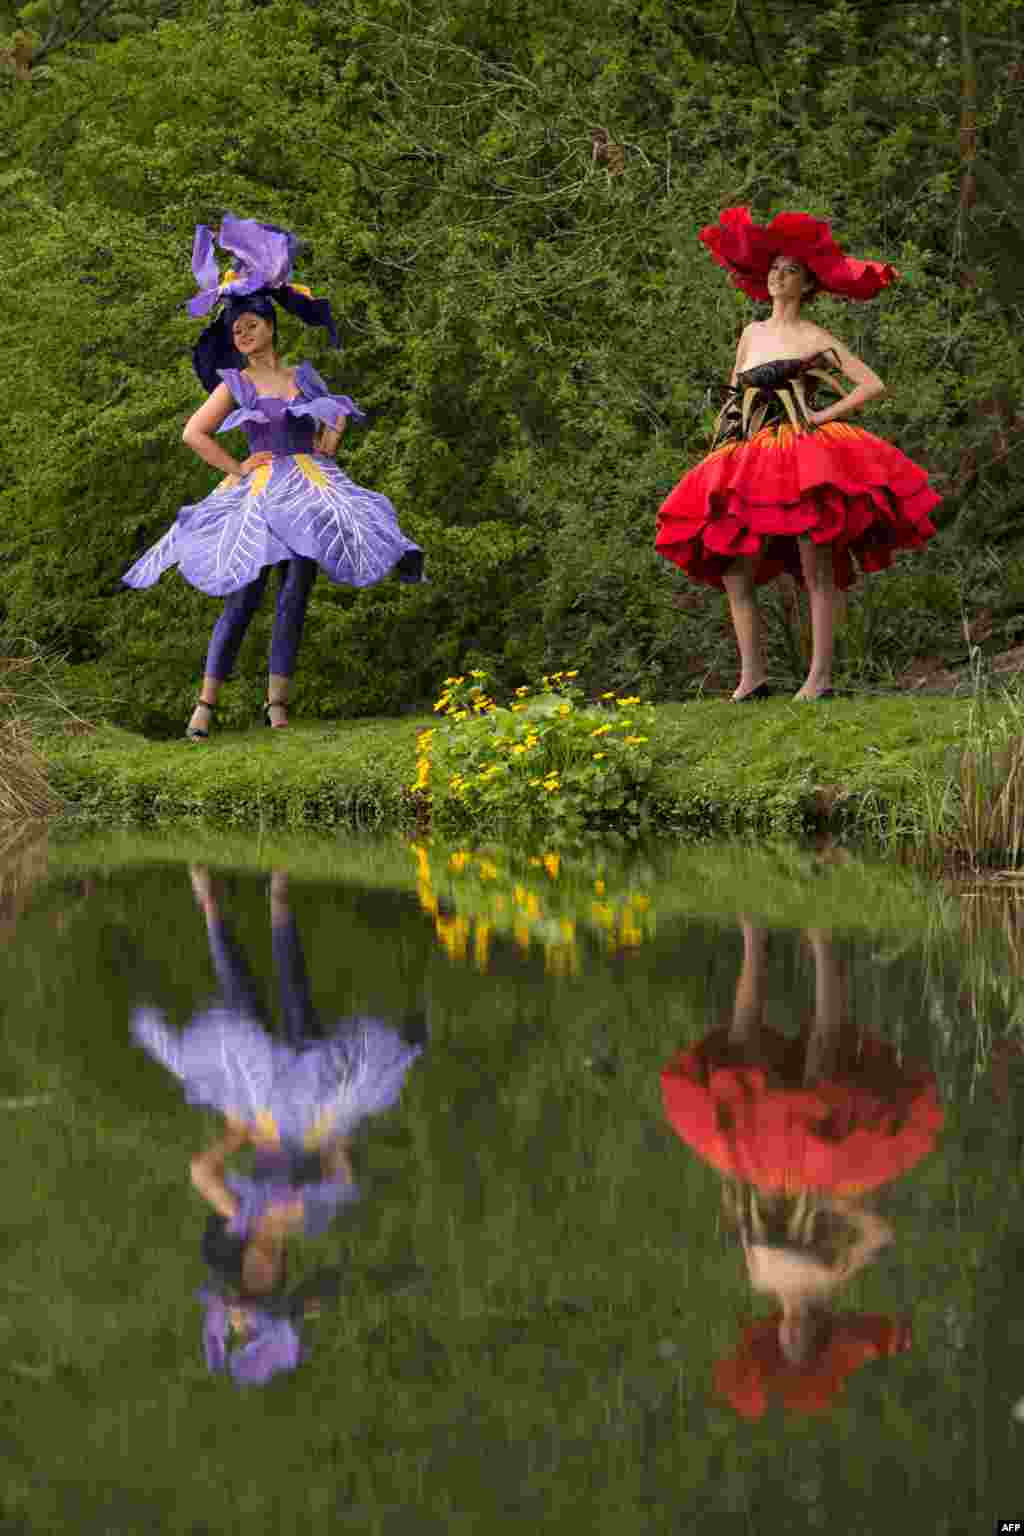 영국 해러게이트 봄꽃 쇼 개막일 모델들이 꽃모양 복장을 선보이고 있다. 1천여 업체가 참가한 가운데 플로리스트들과 꽃꽂이 작가들이 한데 모이는 영국내 관련 분야 최대 행사다. &nbsp;